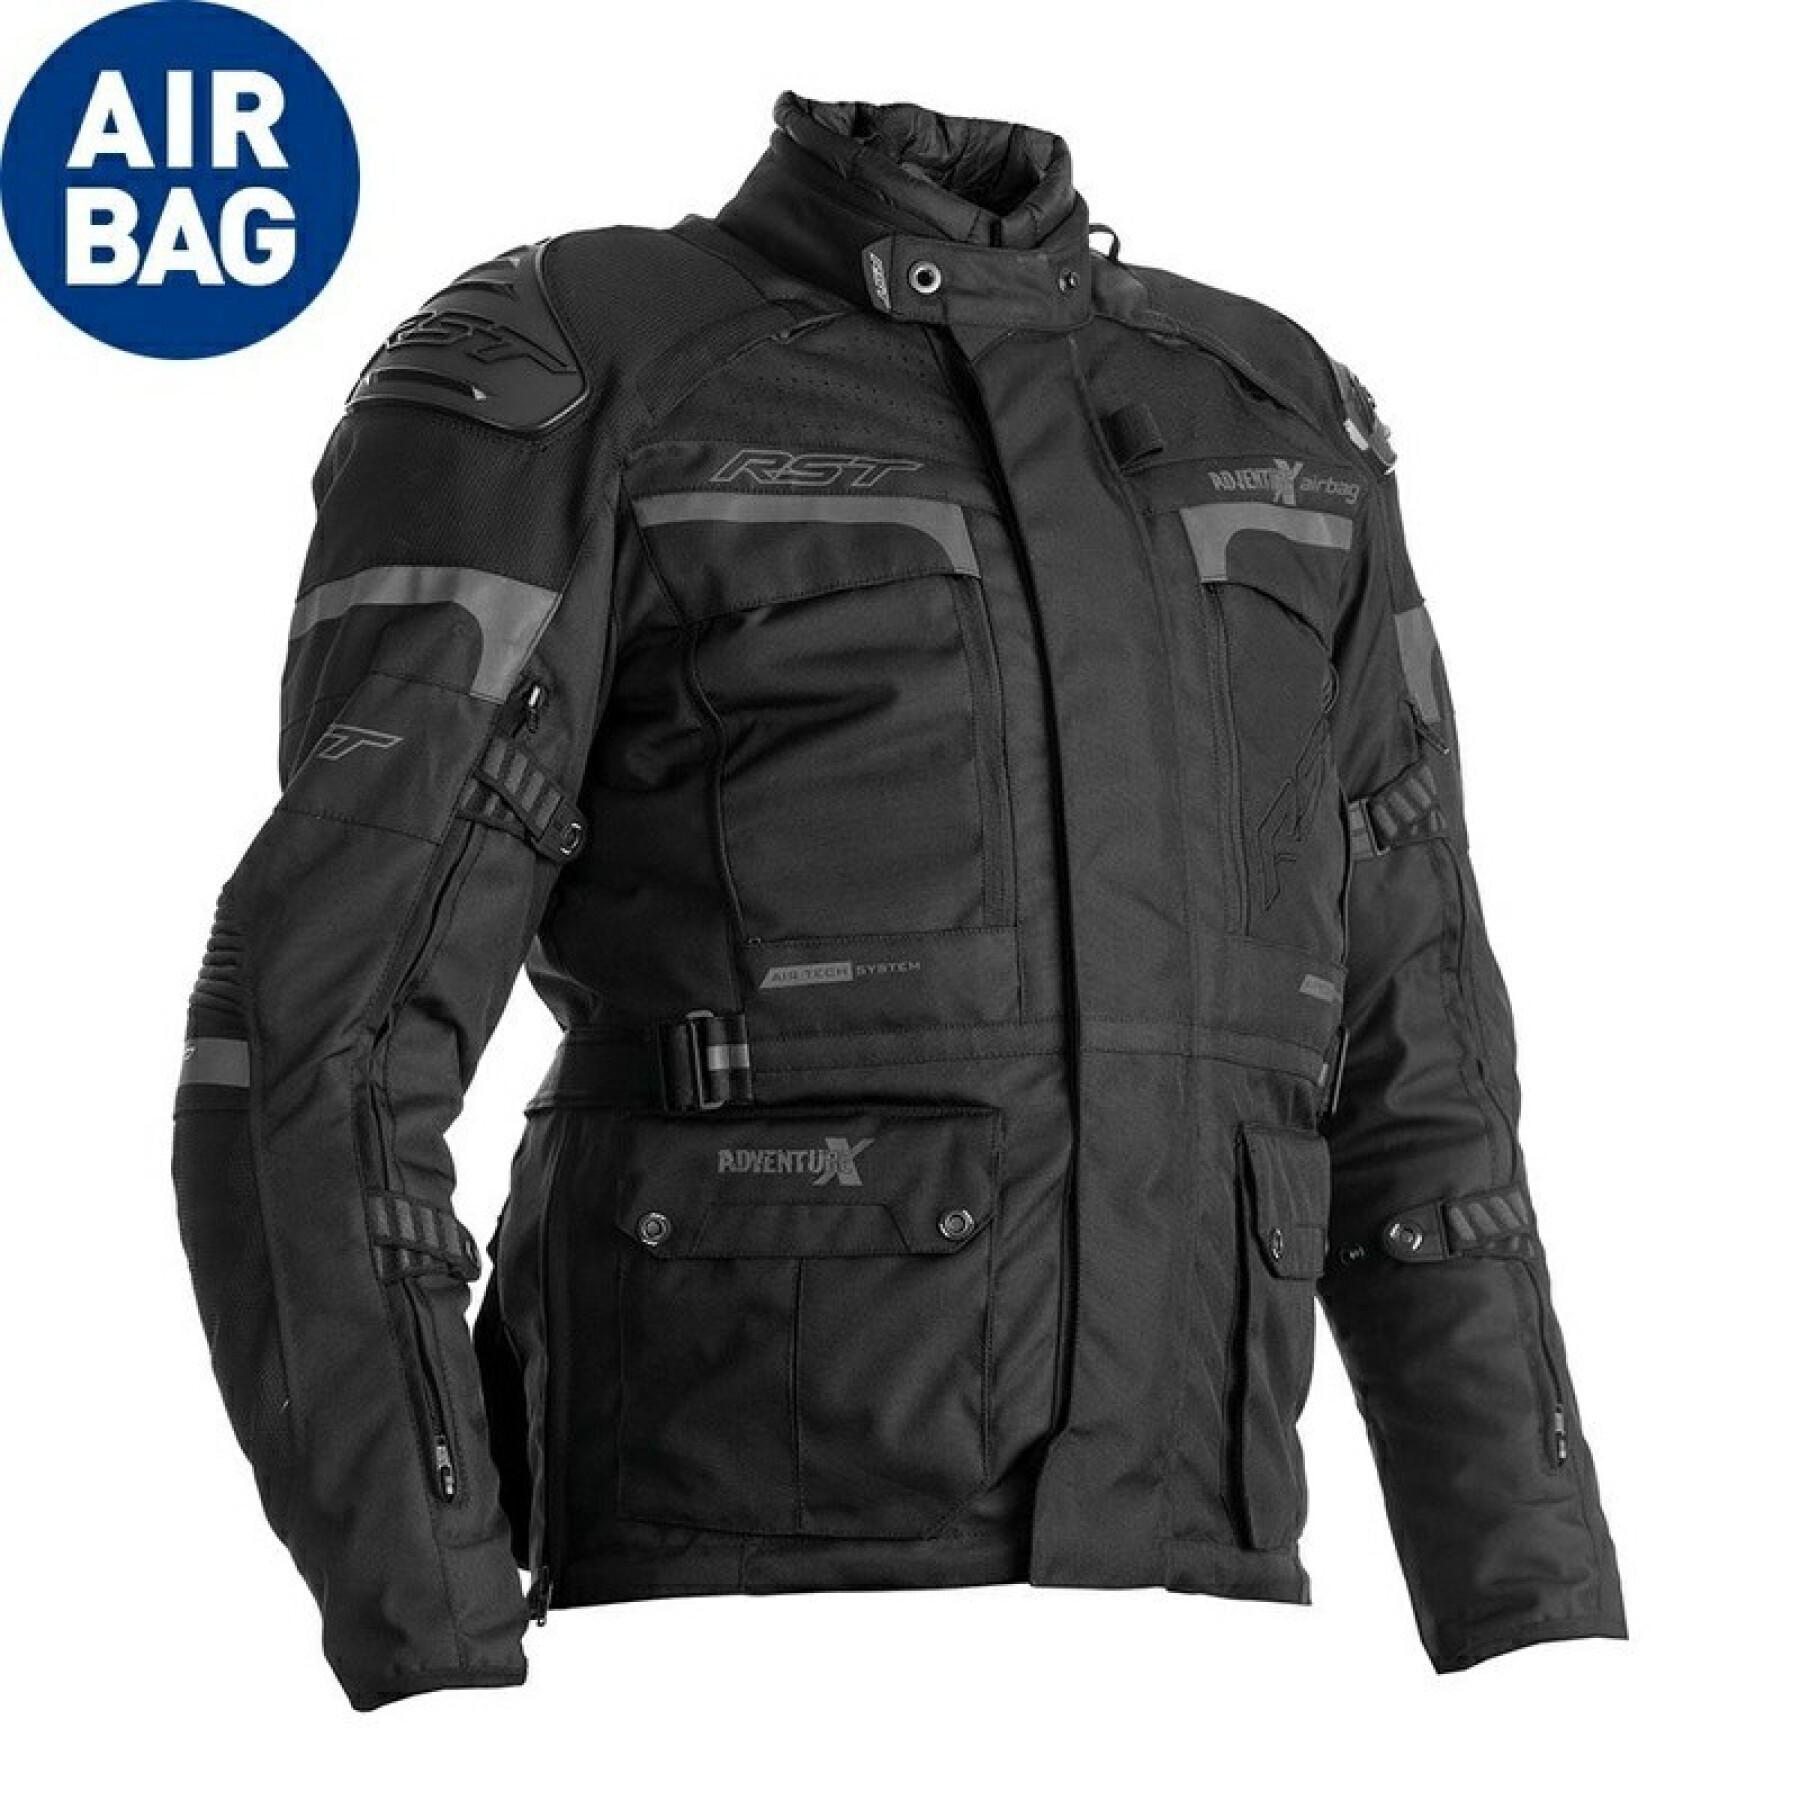 Airbag-Jacke Motorrad Textil RST Adventure-X